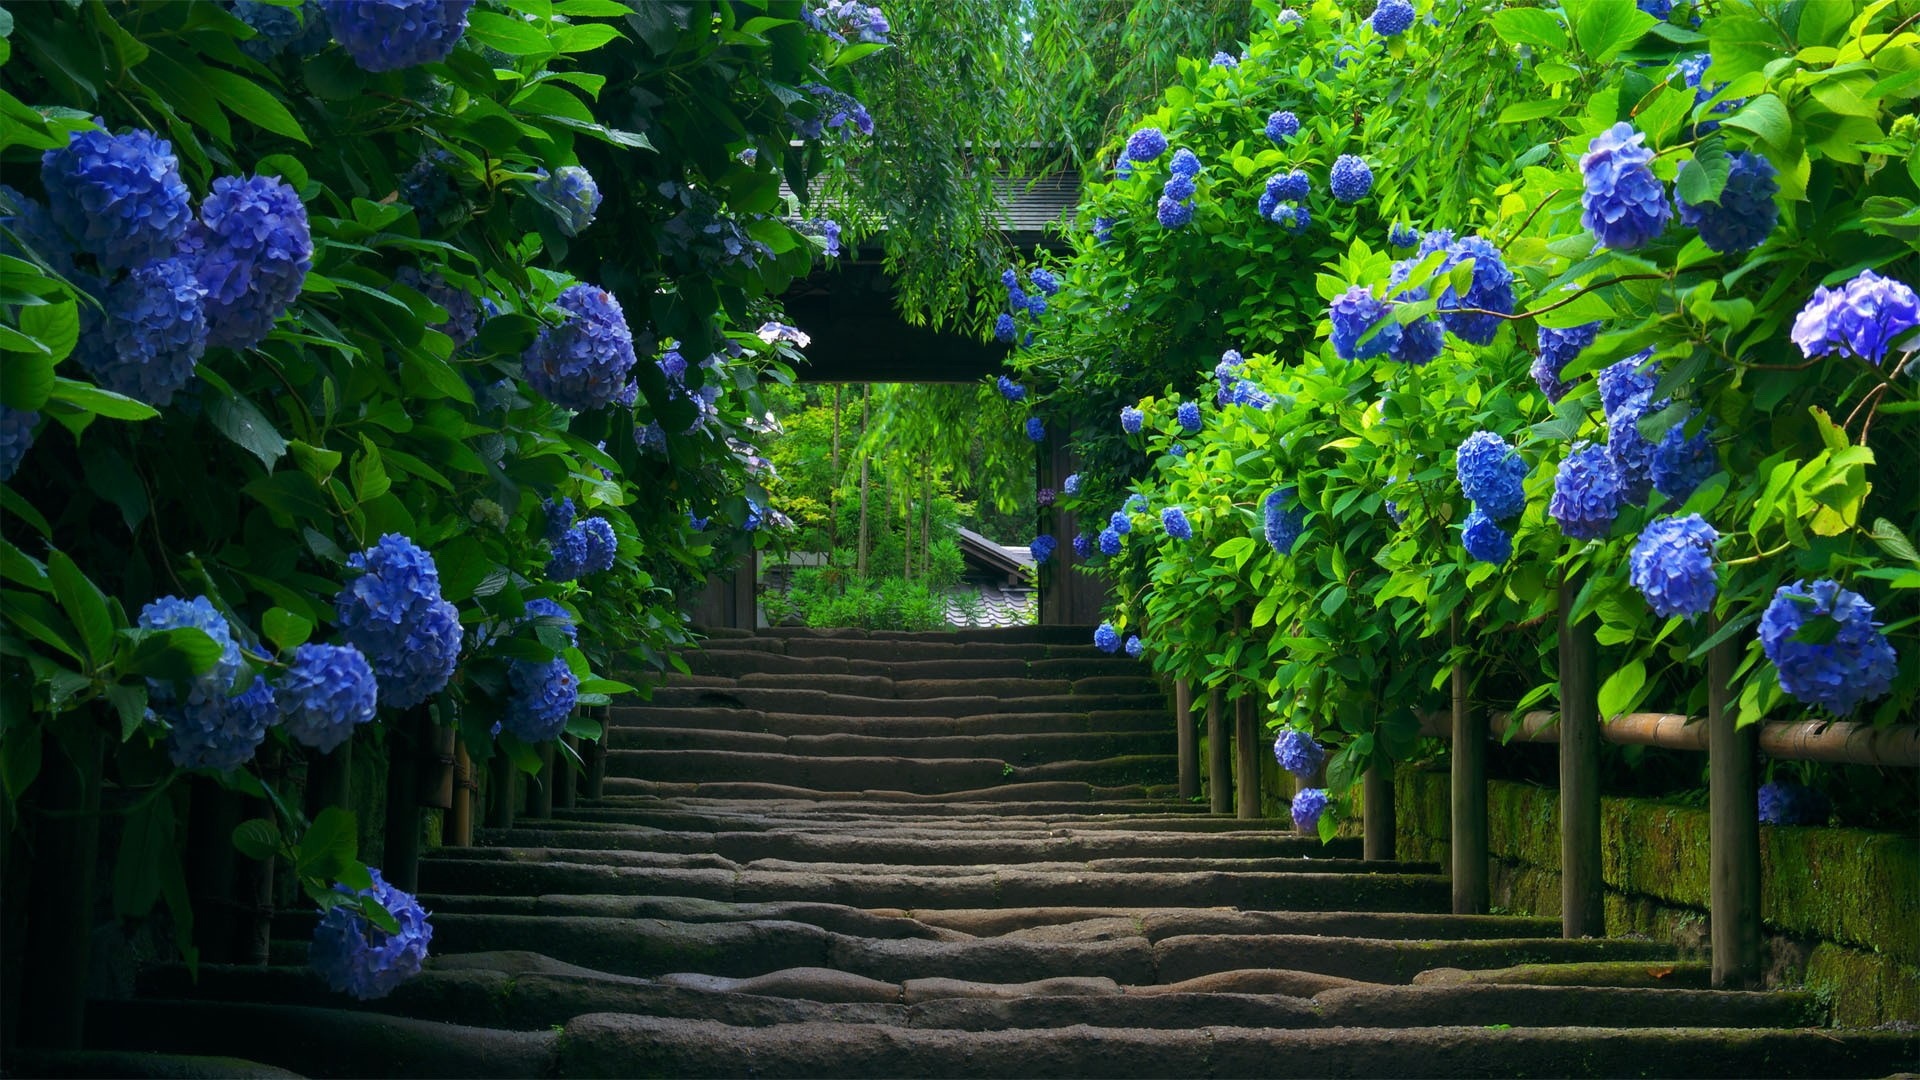 花卉楼梯步骤高清壁纸,高清图片,壁纸,自然风景